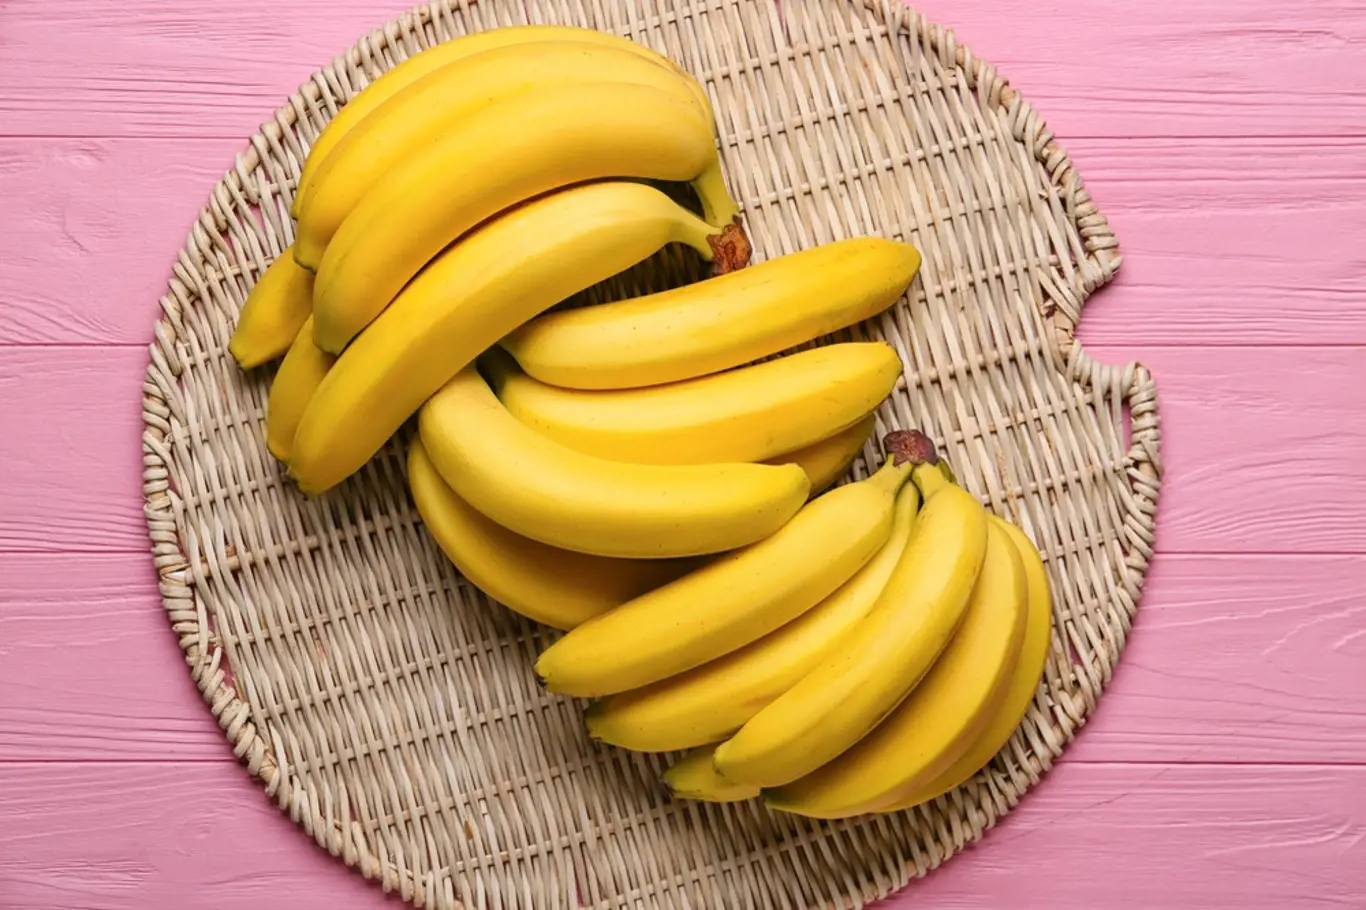 Slaďoučké banány jsou oblíbeným ovocem, ale rychle se kazí.